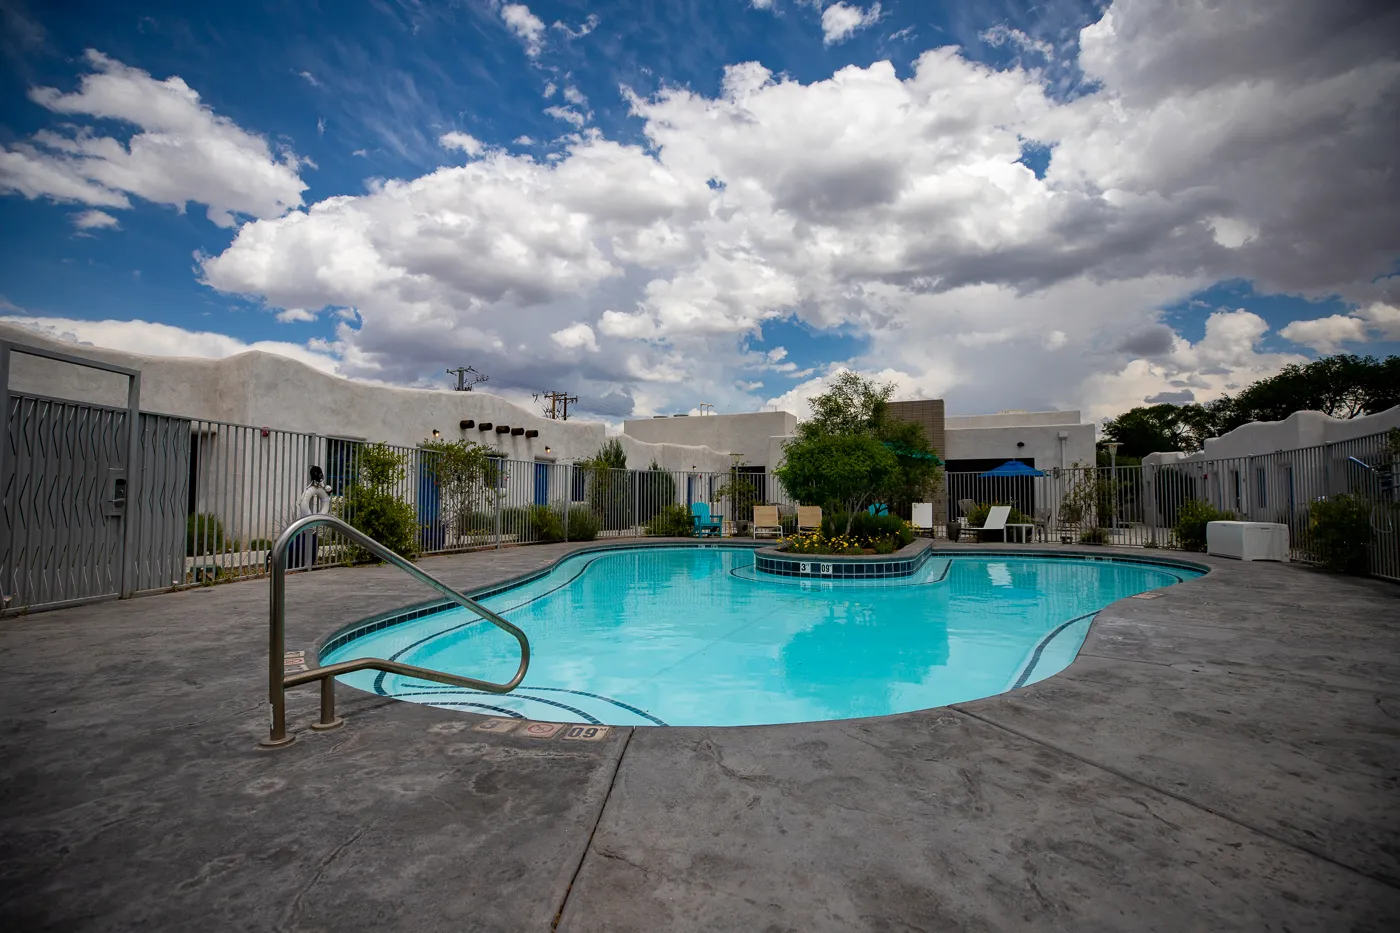 Wading pool at El Vado Motel in Albuquerque, New Mexico (Route 66 Motel)